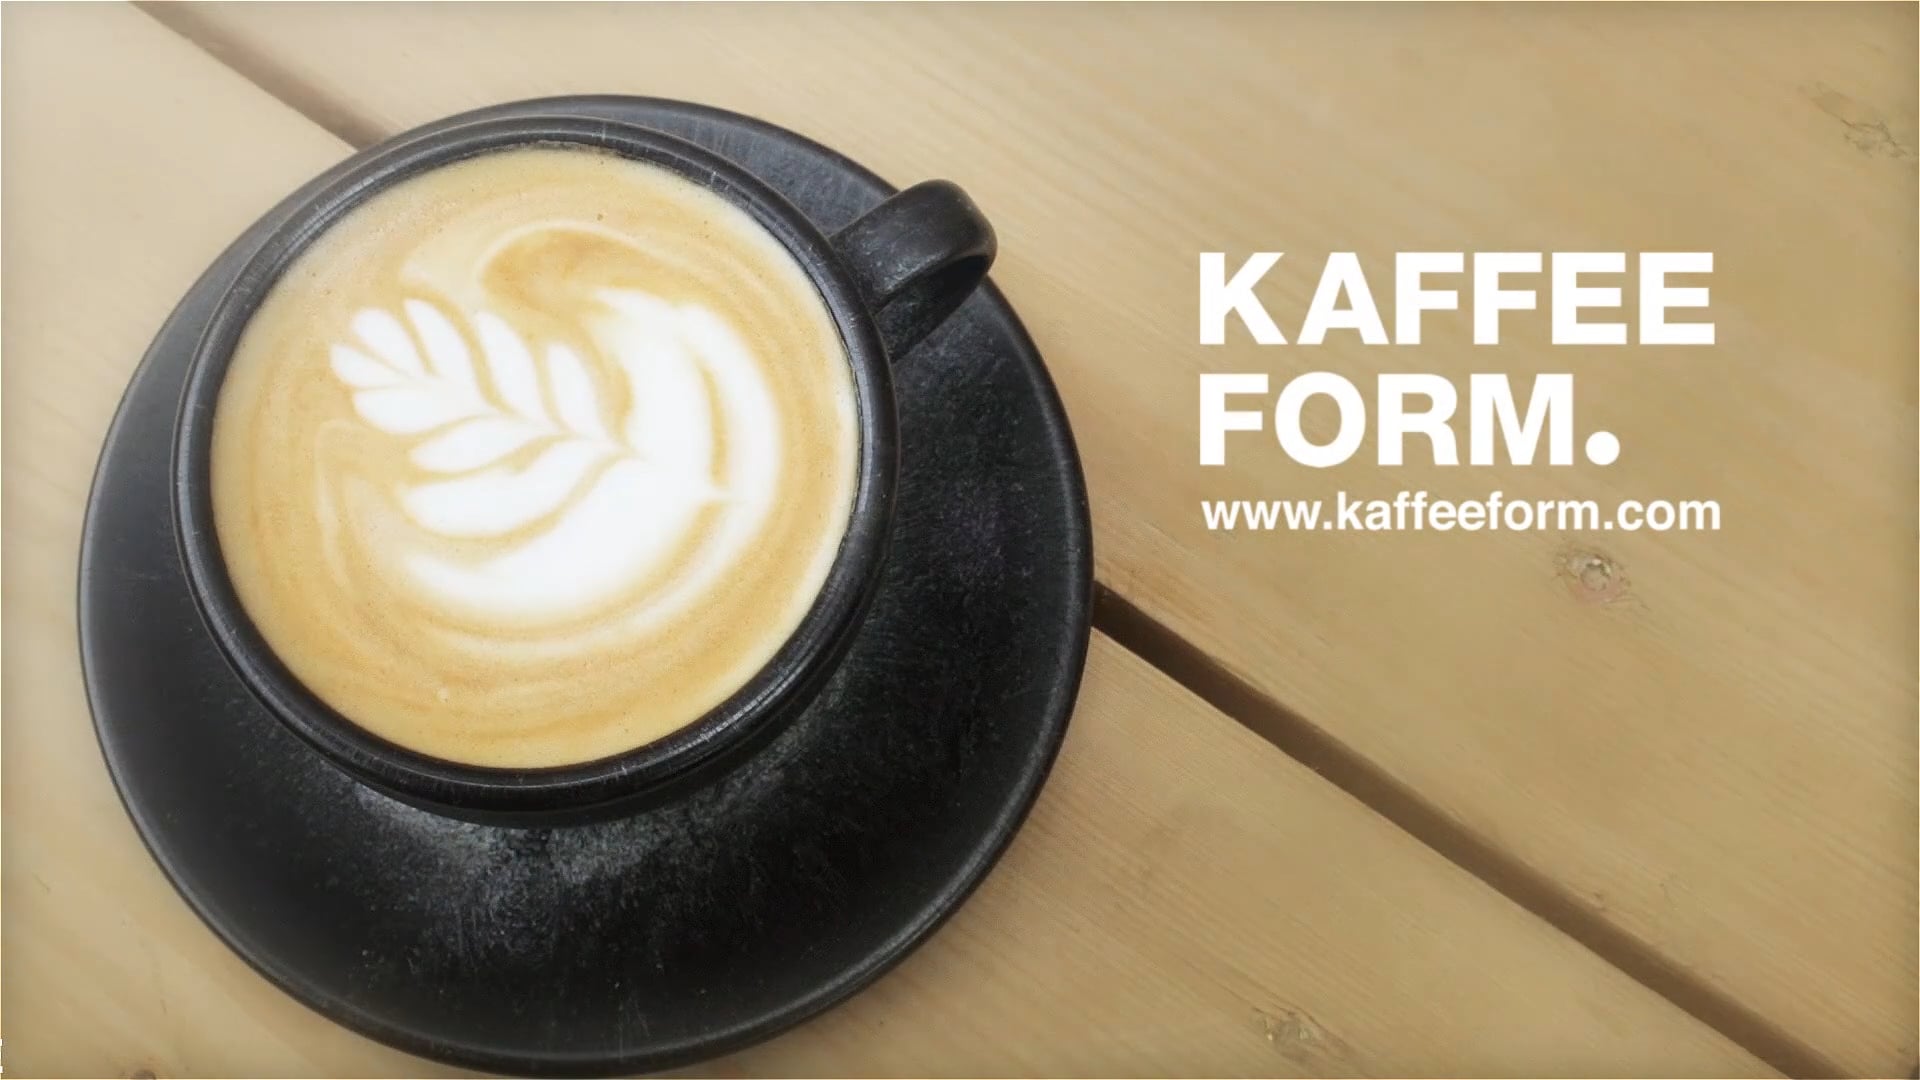 Kaffee Form.